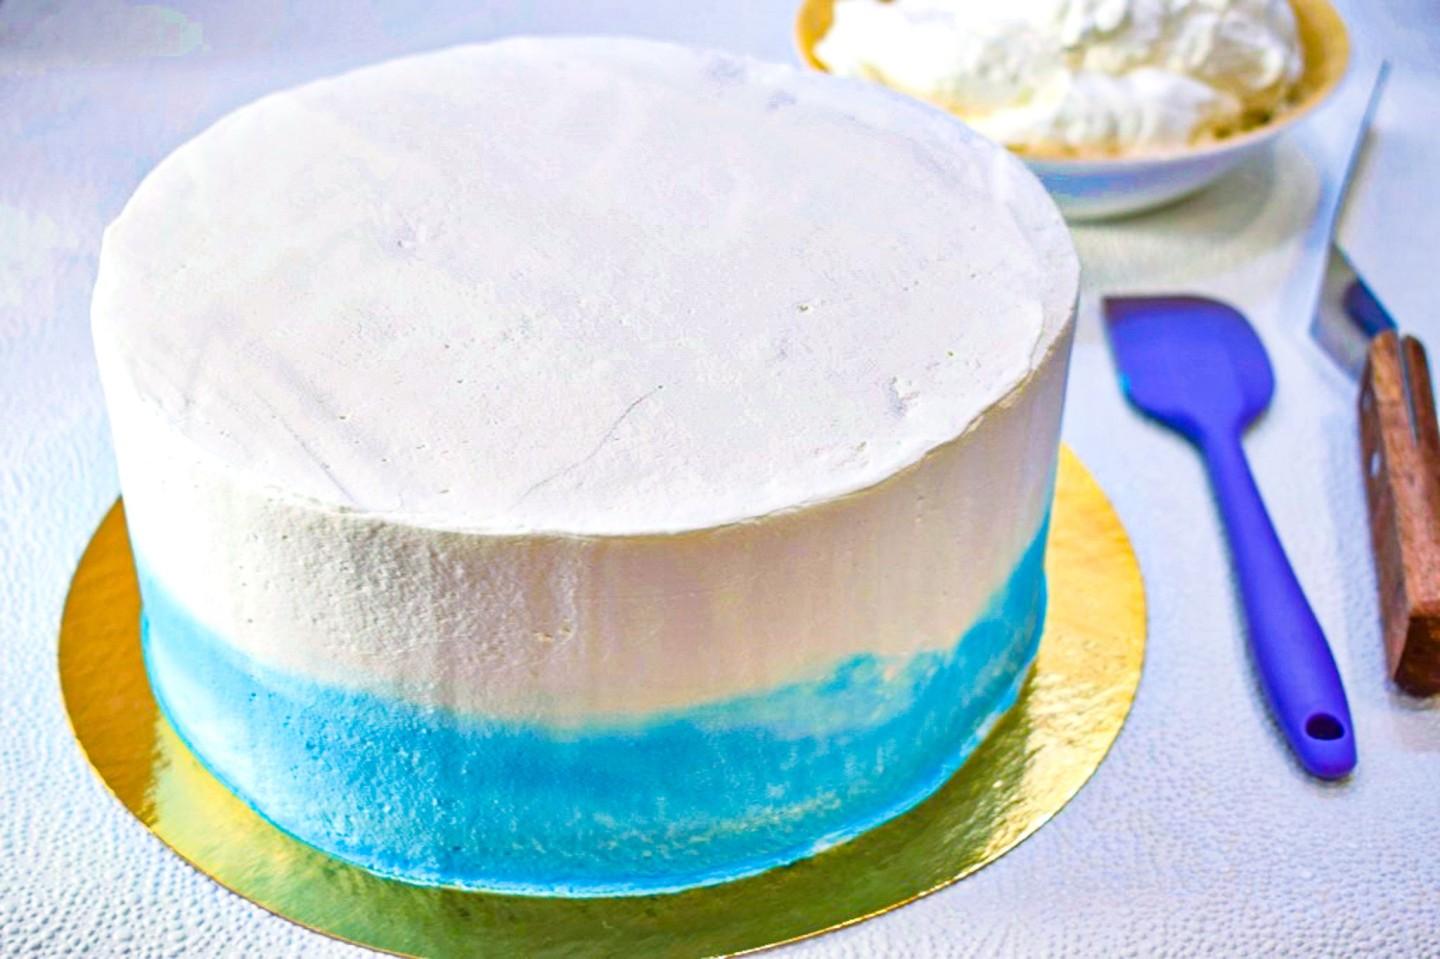 Крем чиз для торта на сливках для прослаивания и выравнивания рецепт с фото